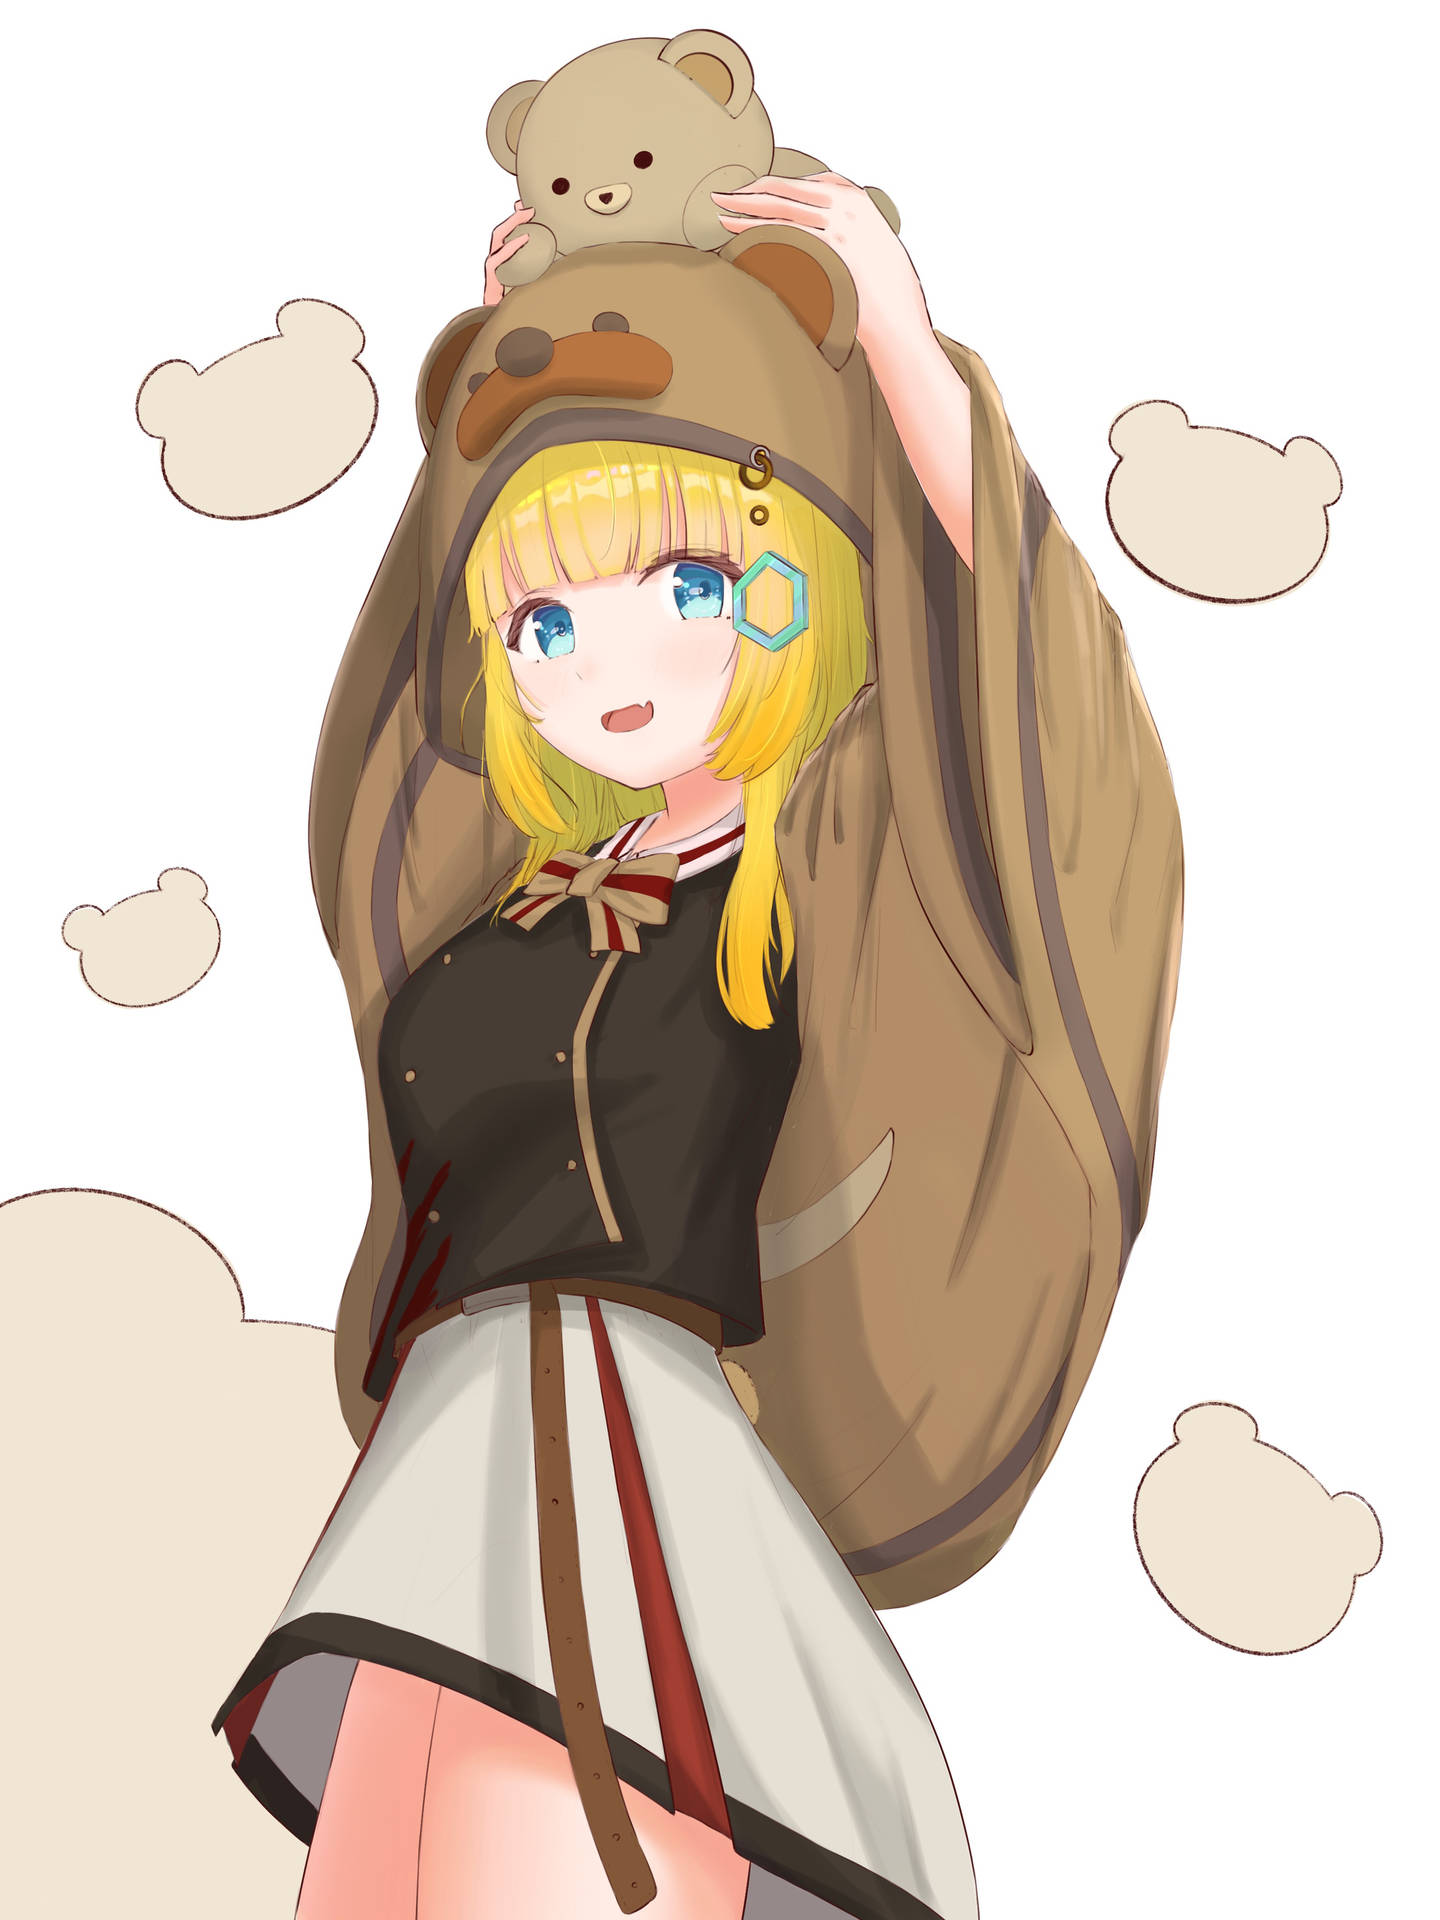 Cute Anime Girl With Bear